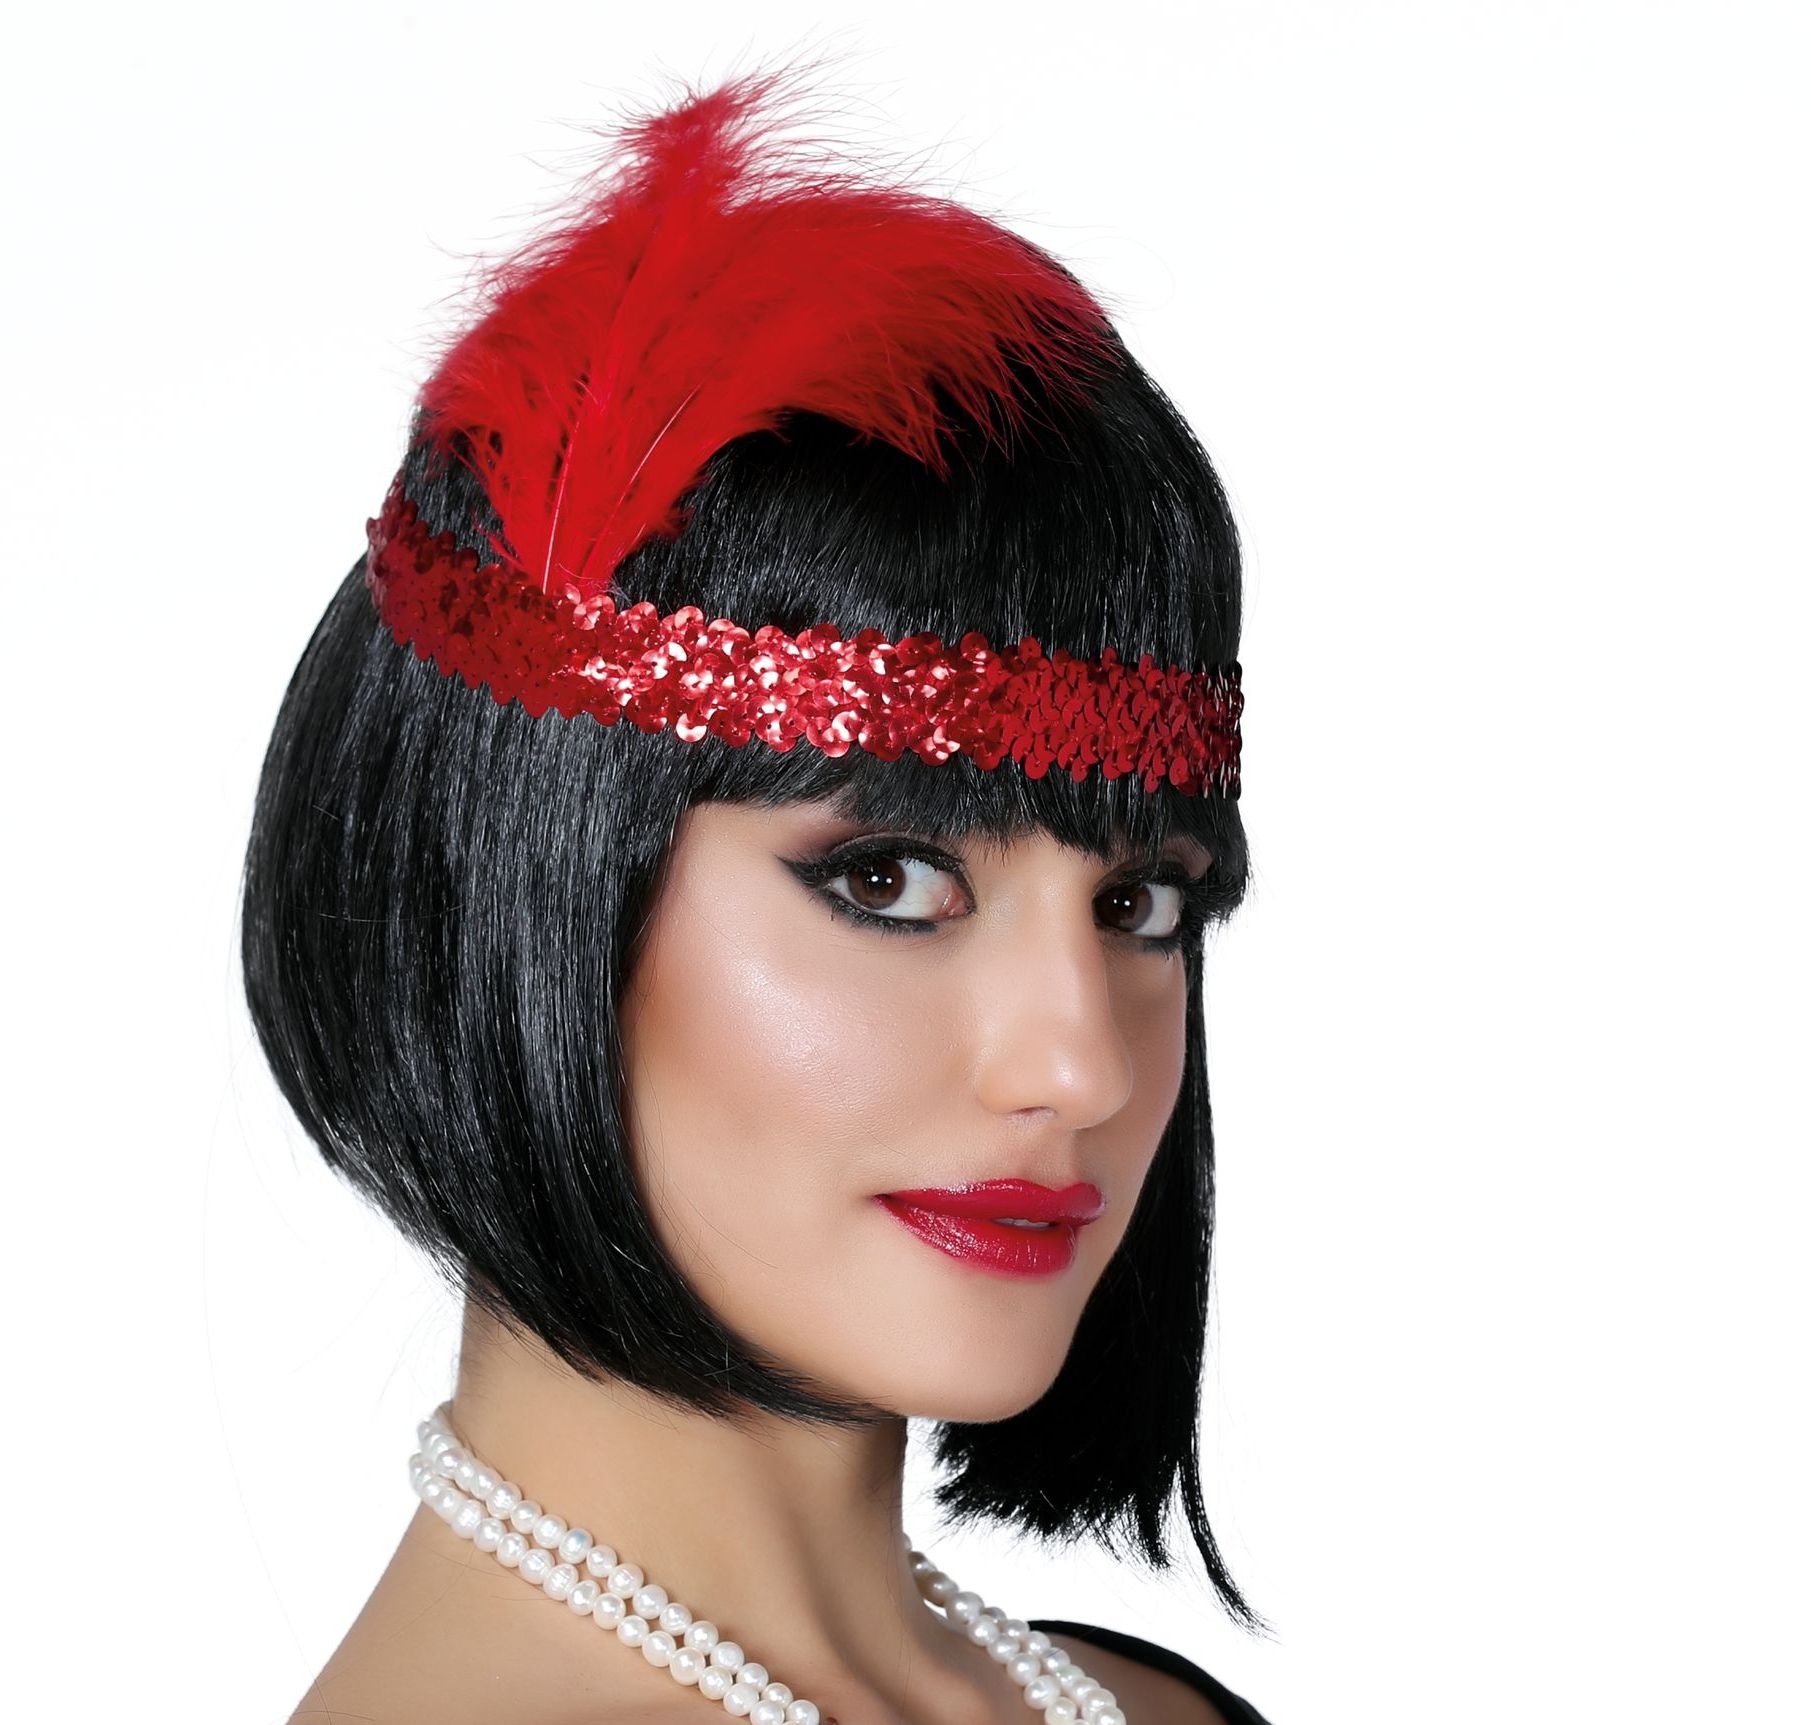 mengsel Verbazing paars Rode pailletten hoofdband met veer | Carnavalskleding.nl